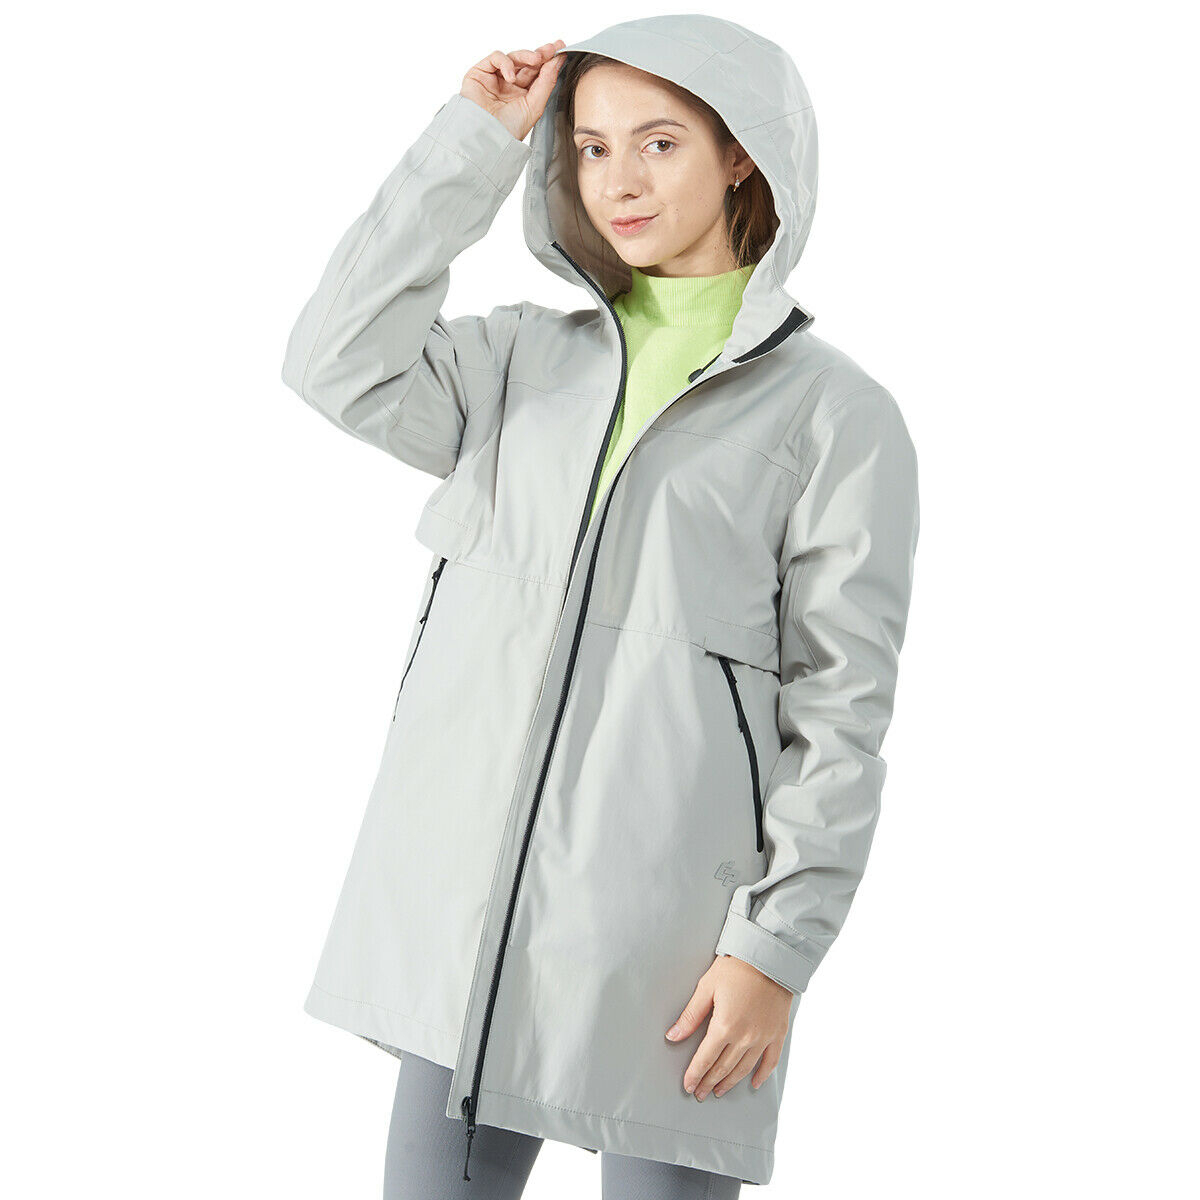 Hooded Women's Wind & Waterproof Trench Rain Jacket-Gray-XL - Coats ...